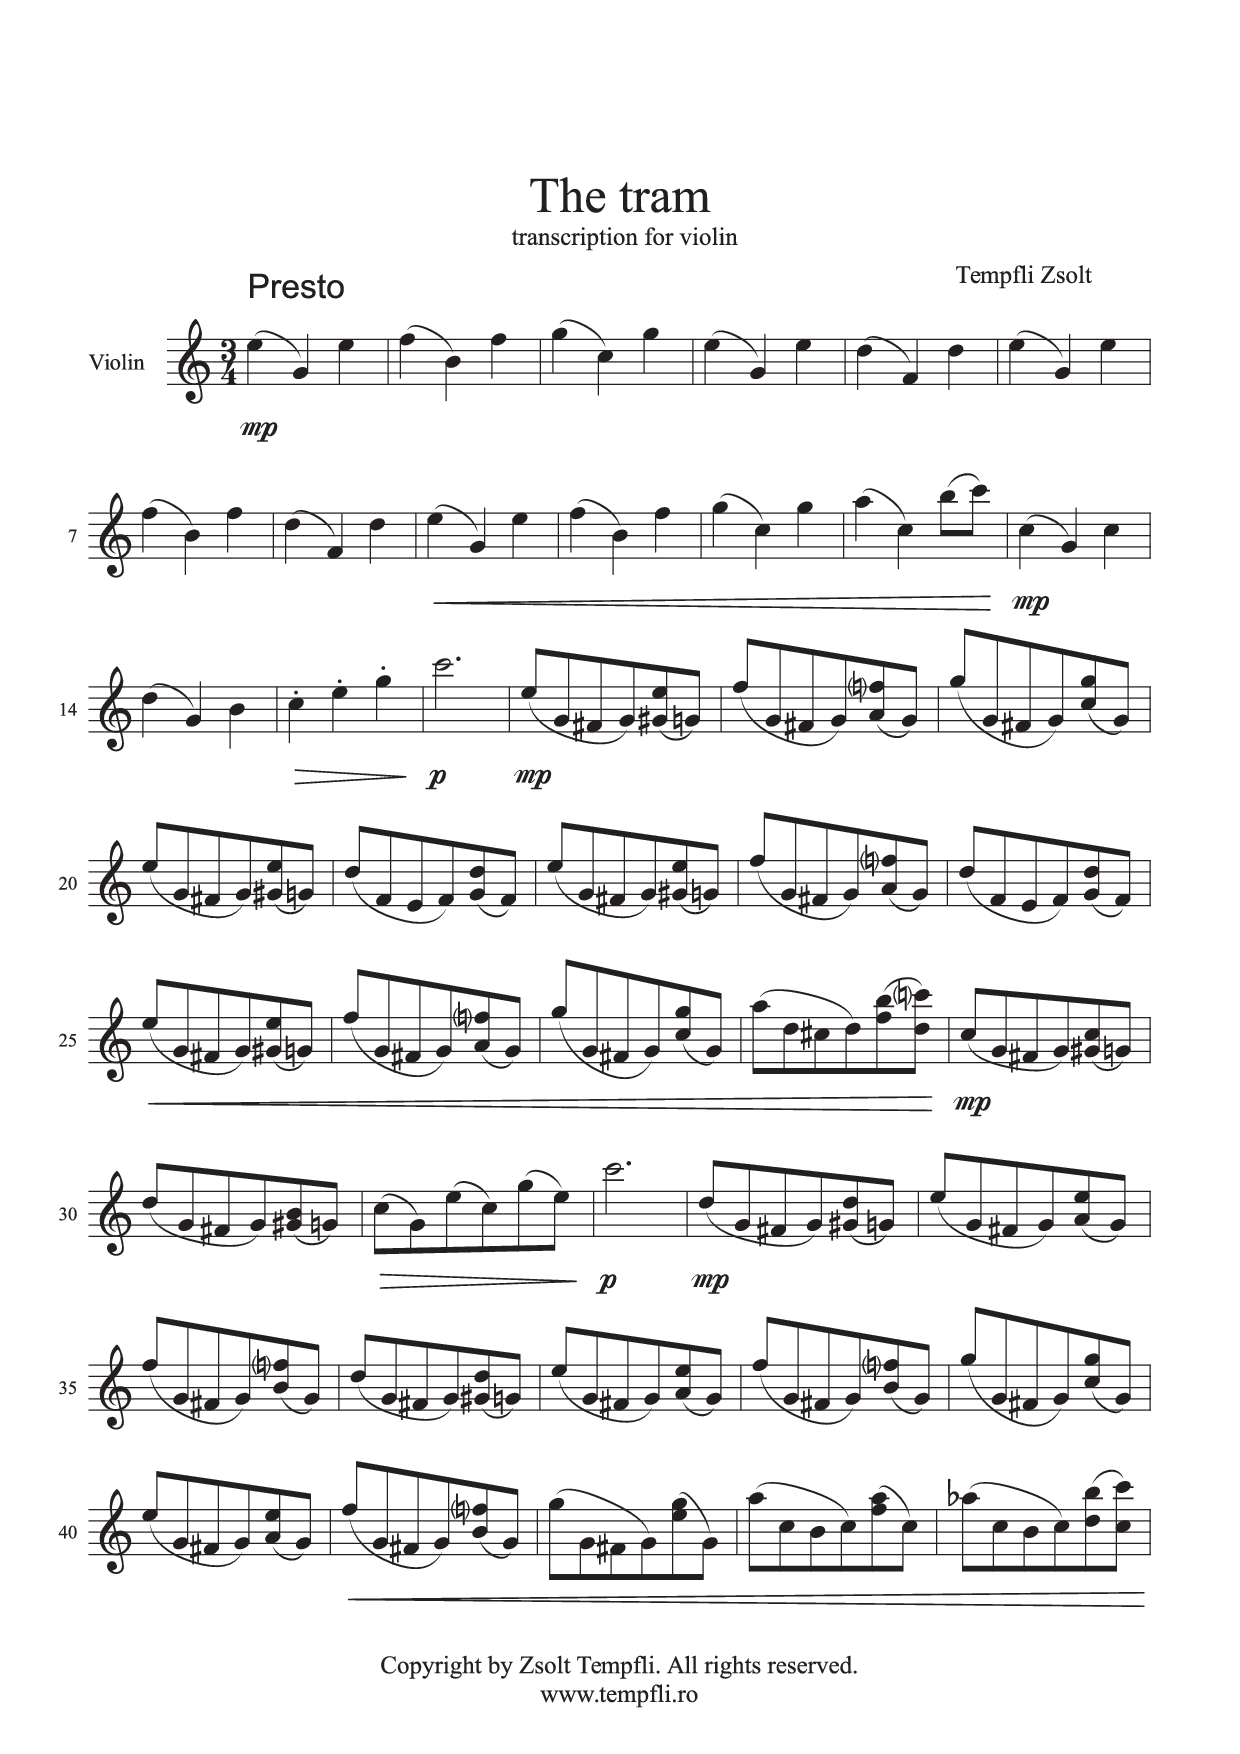 Tempfli Zsolt: A villamos szóló hegedűre op. 18 / b